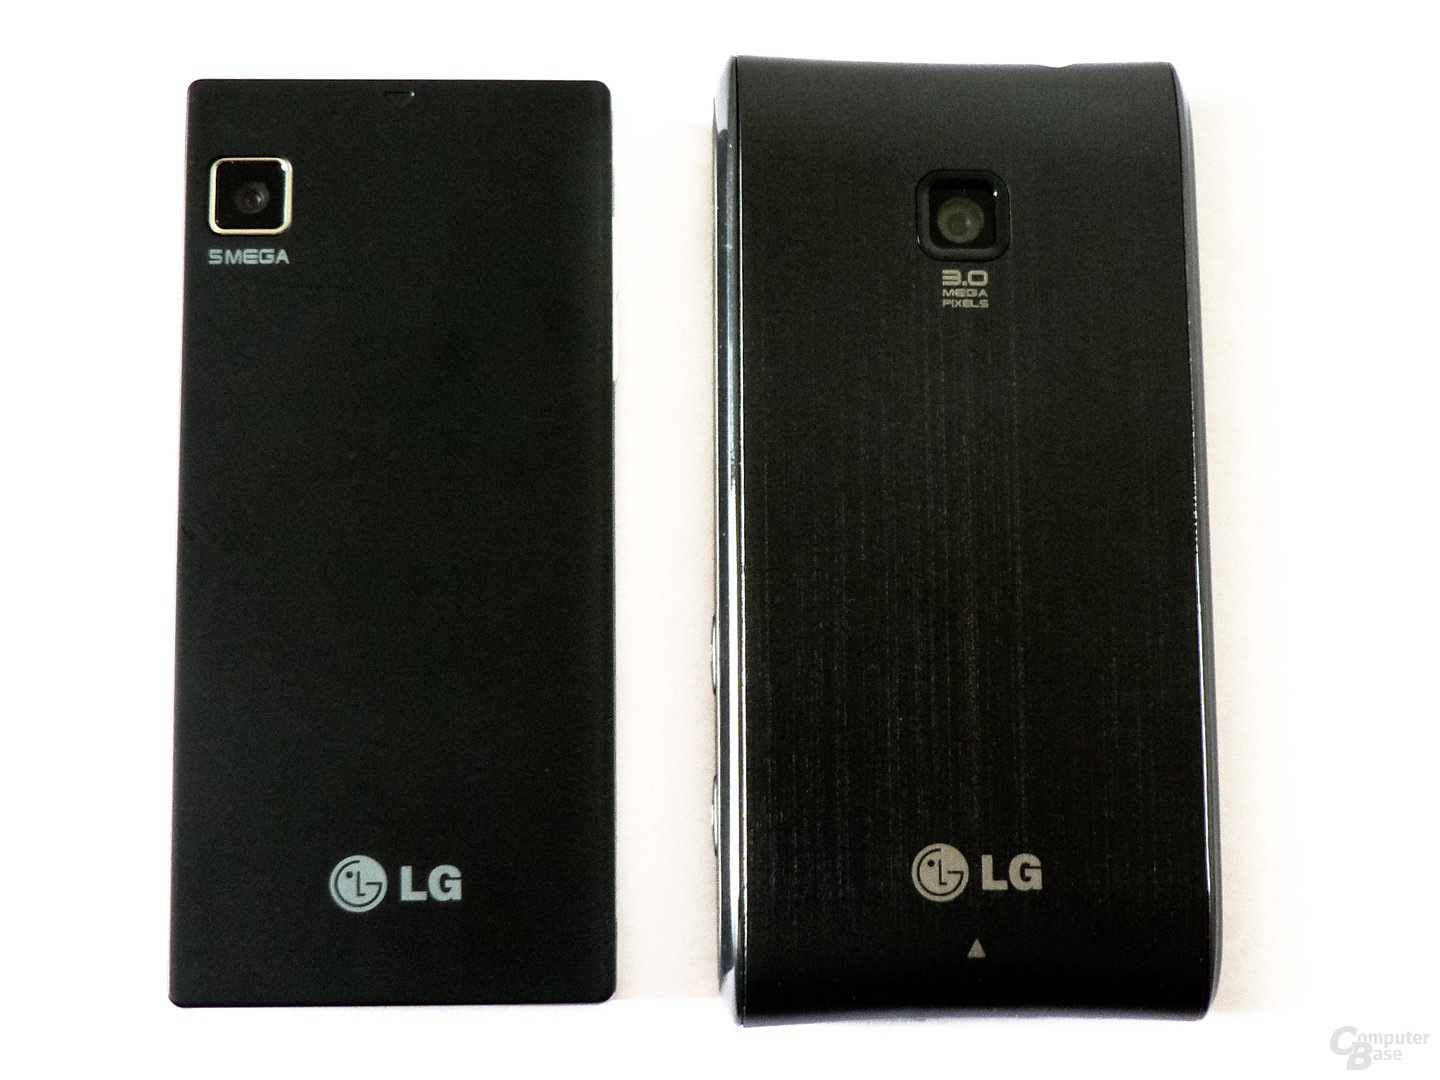 LG GD 880 Mini und LG GT 540